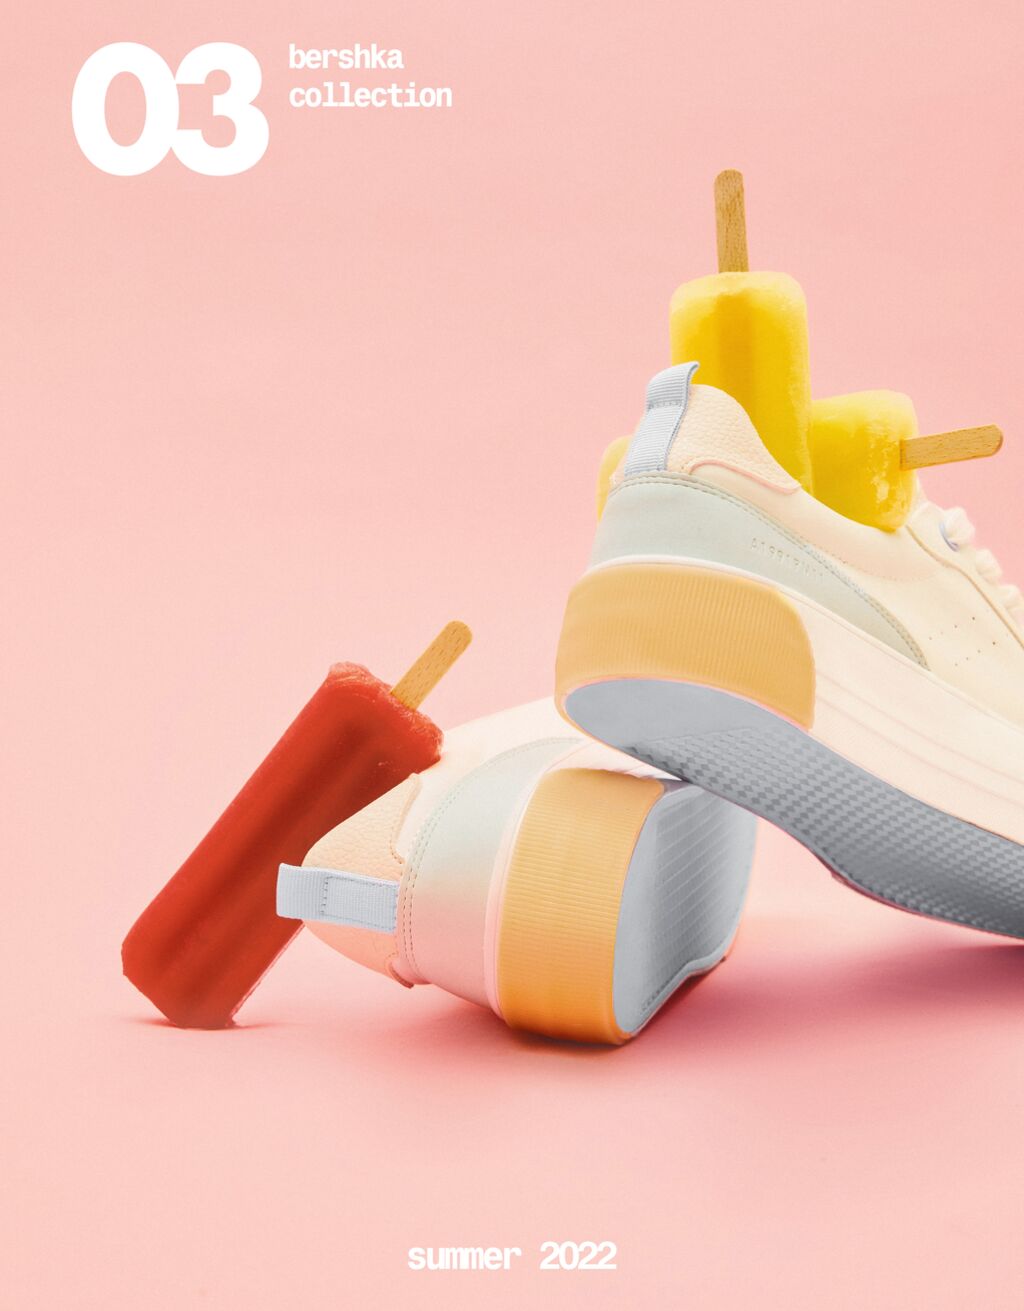 Αθλητικά παπούτσια πλατφόρμα με αντίθετο συνδυασμό χρωμάτων